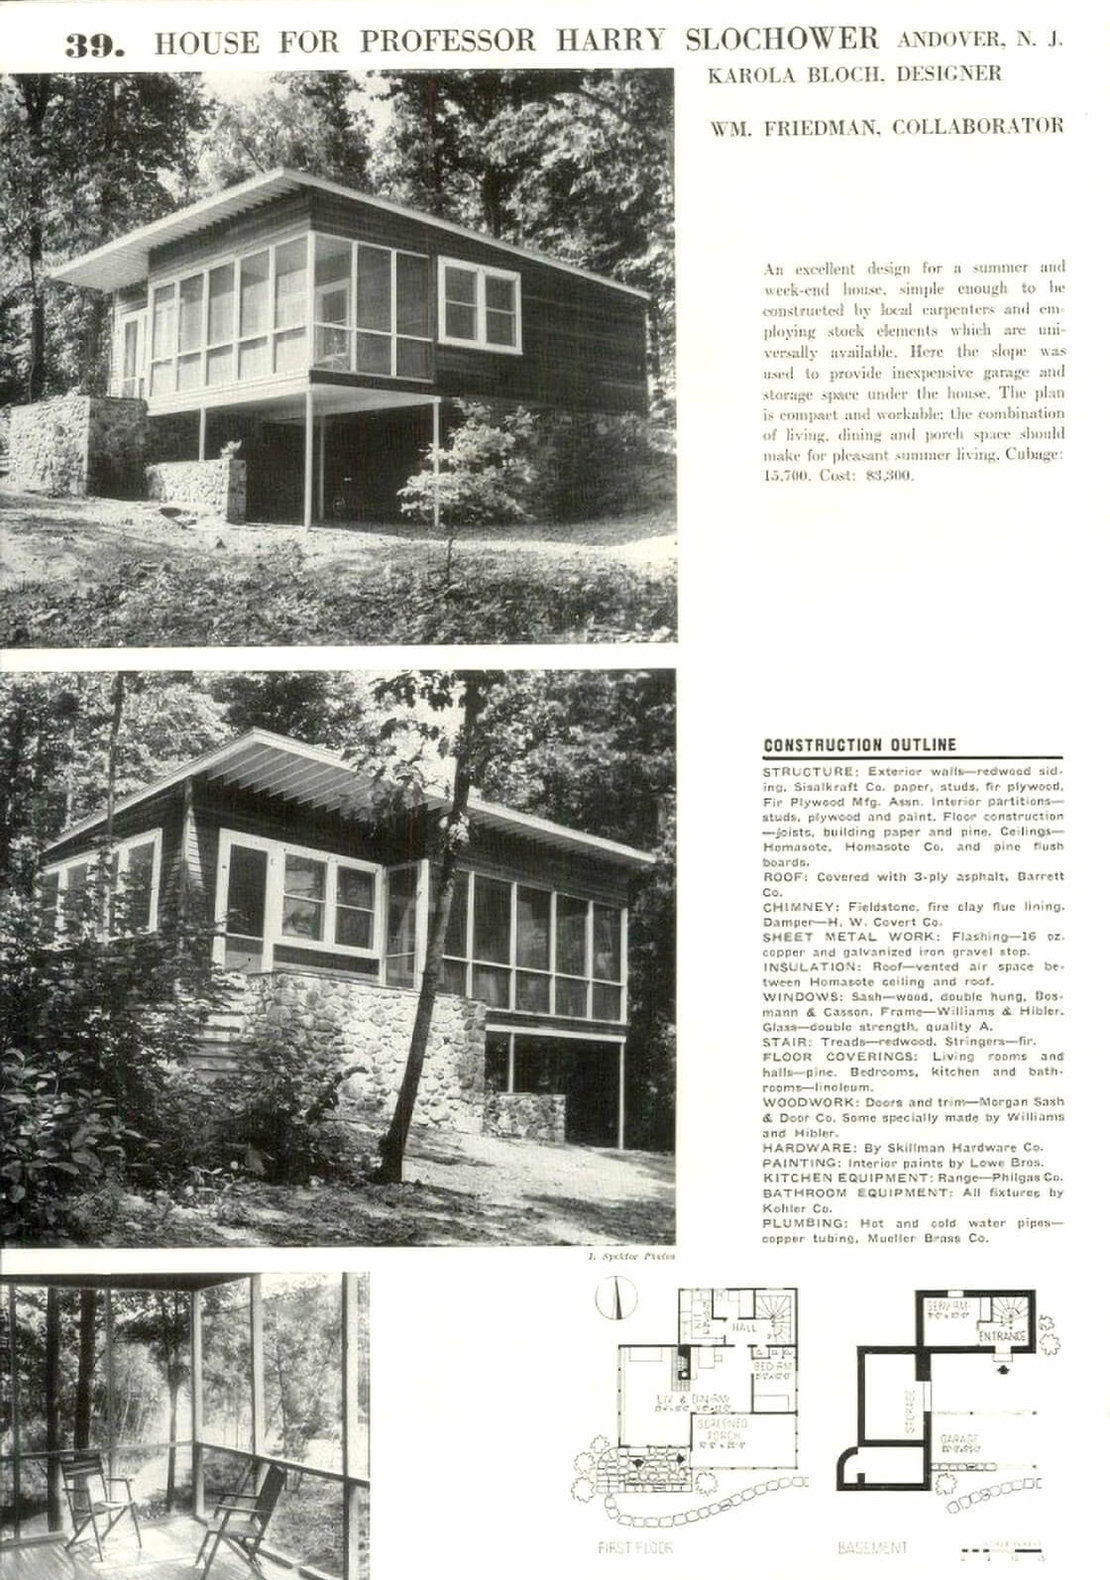 Karola Bloch, Sommerhaus für Prof. Harry Slochower, Andower, New Jersey, in: Architectural Forum, Okt. 1939 